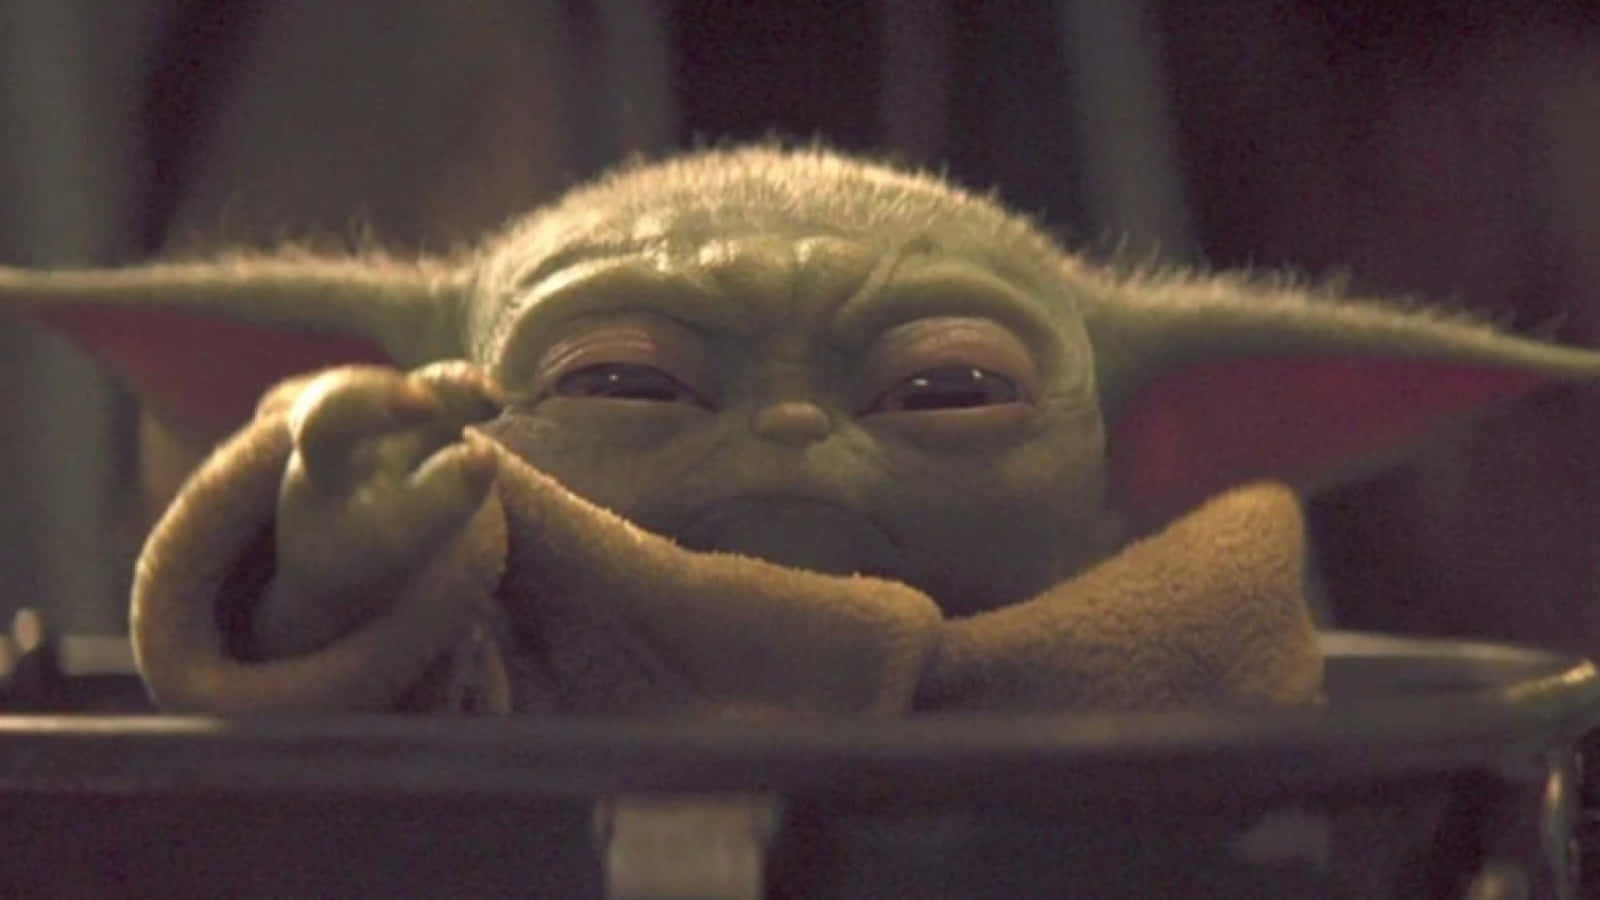 Lindaimagen De Baby Yoda Con Apariencia De Ancianito